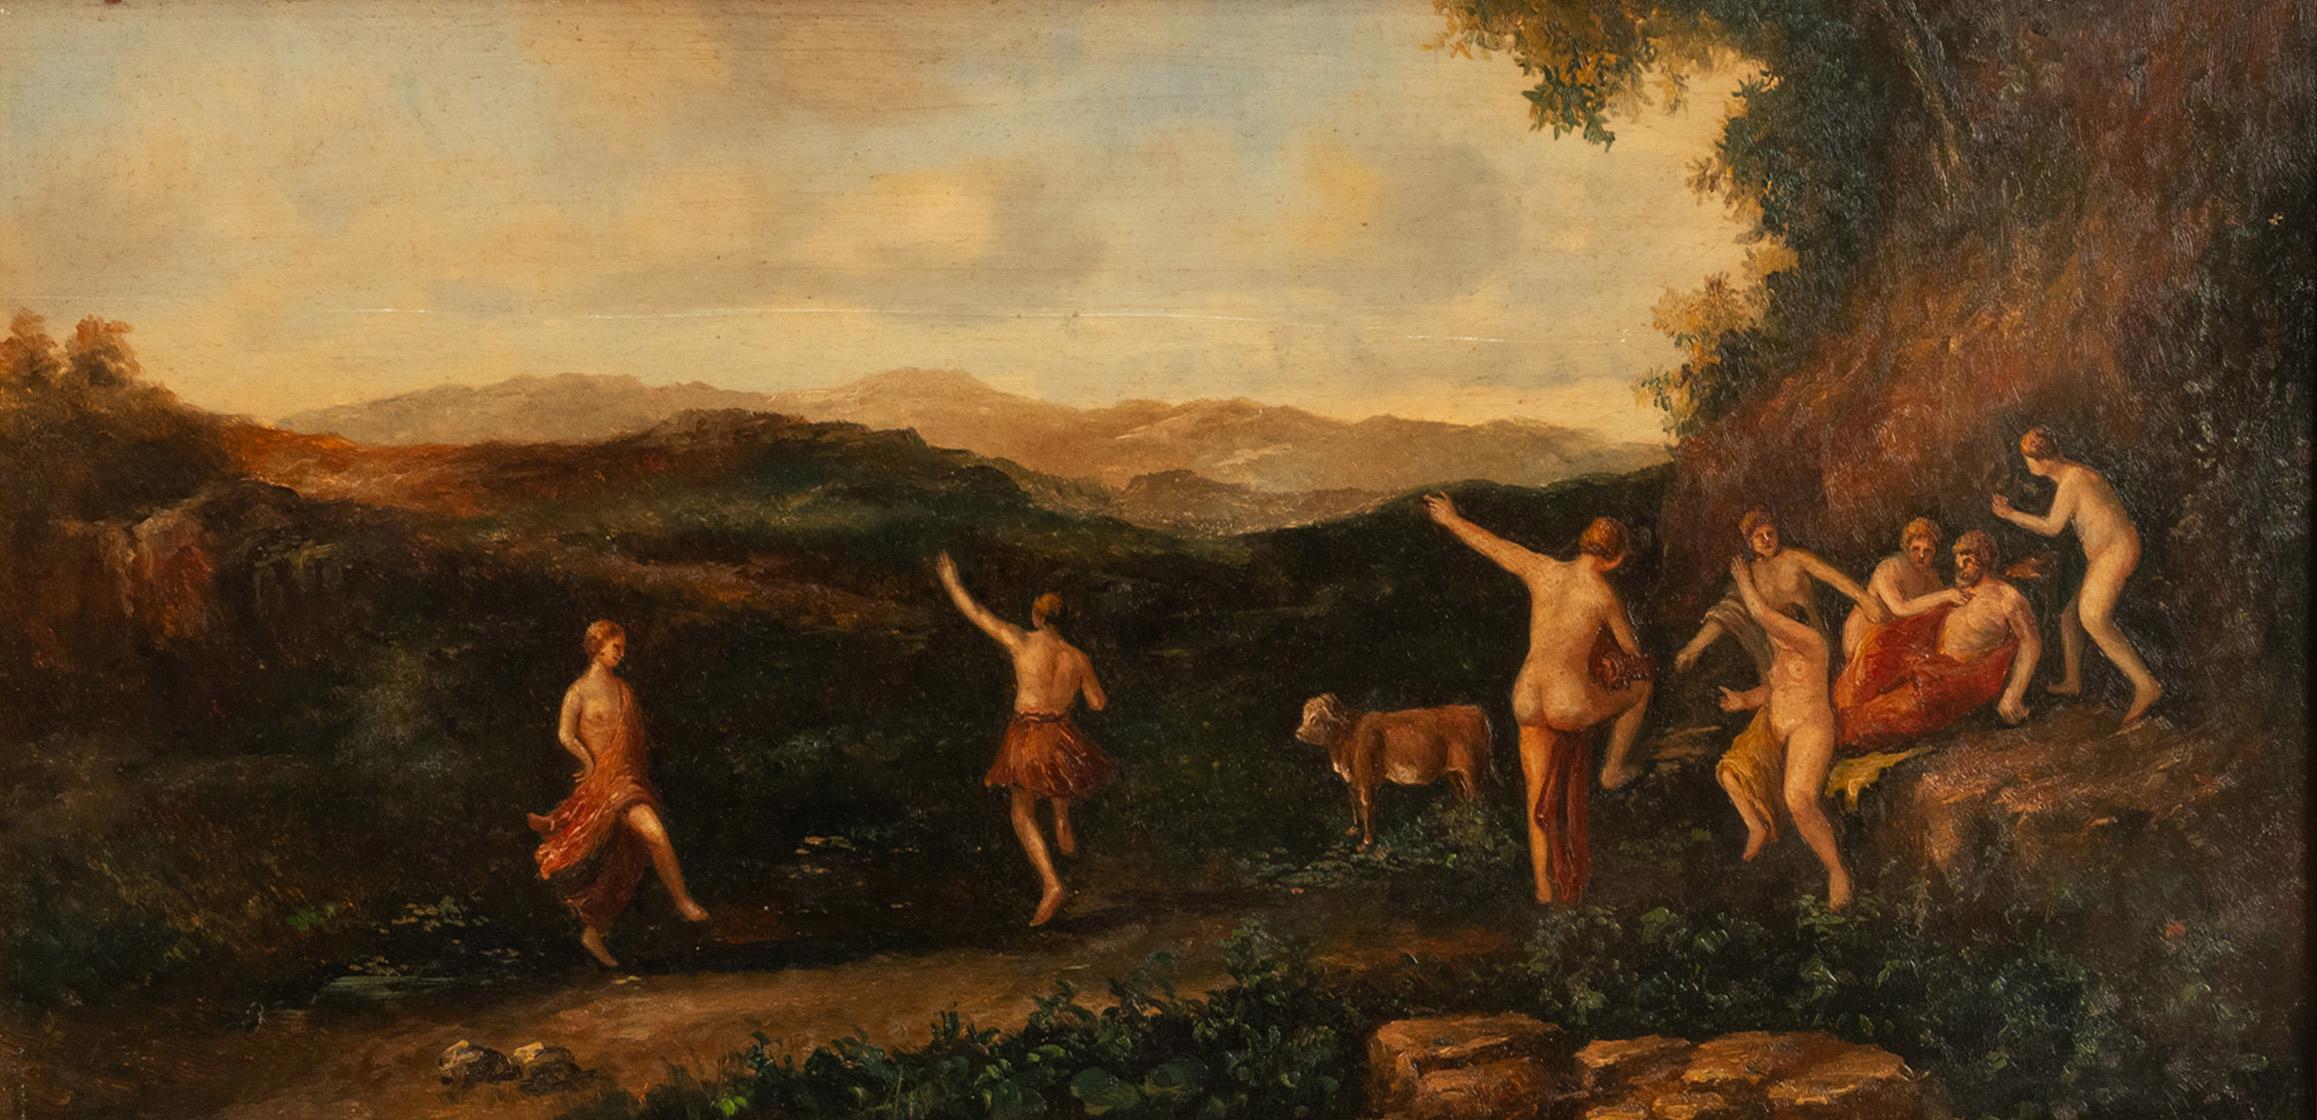 Antikes neoklassizistisches Bacchanisches Gemälde des 19. Jahrhunderts, Tanz der Nymphen 1850 – Painting von Cornelius van Poelenburgh